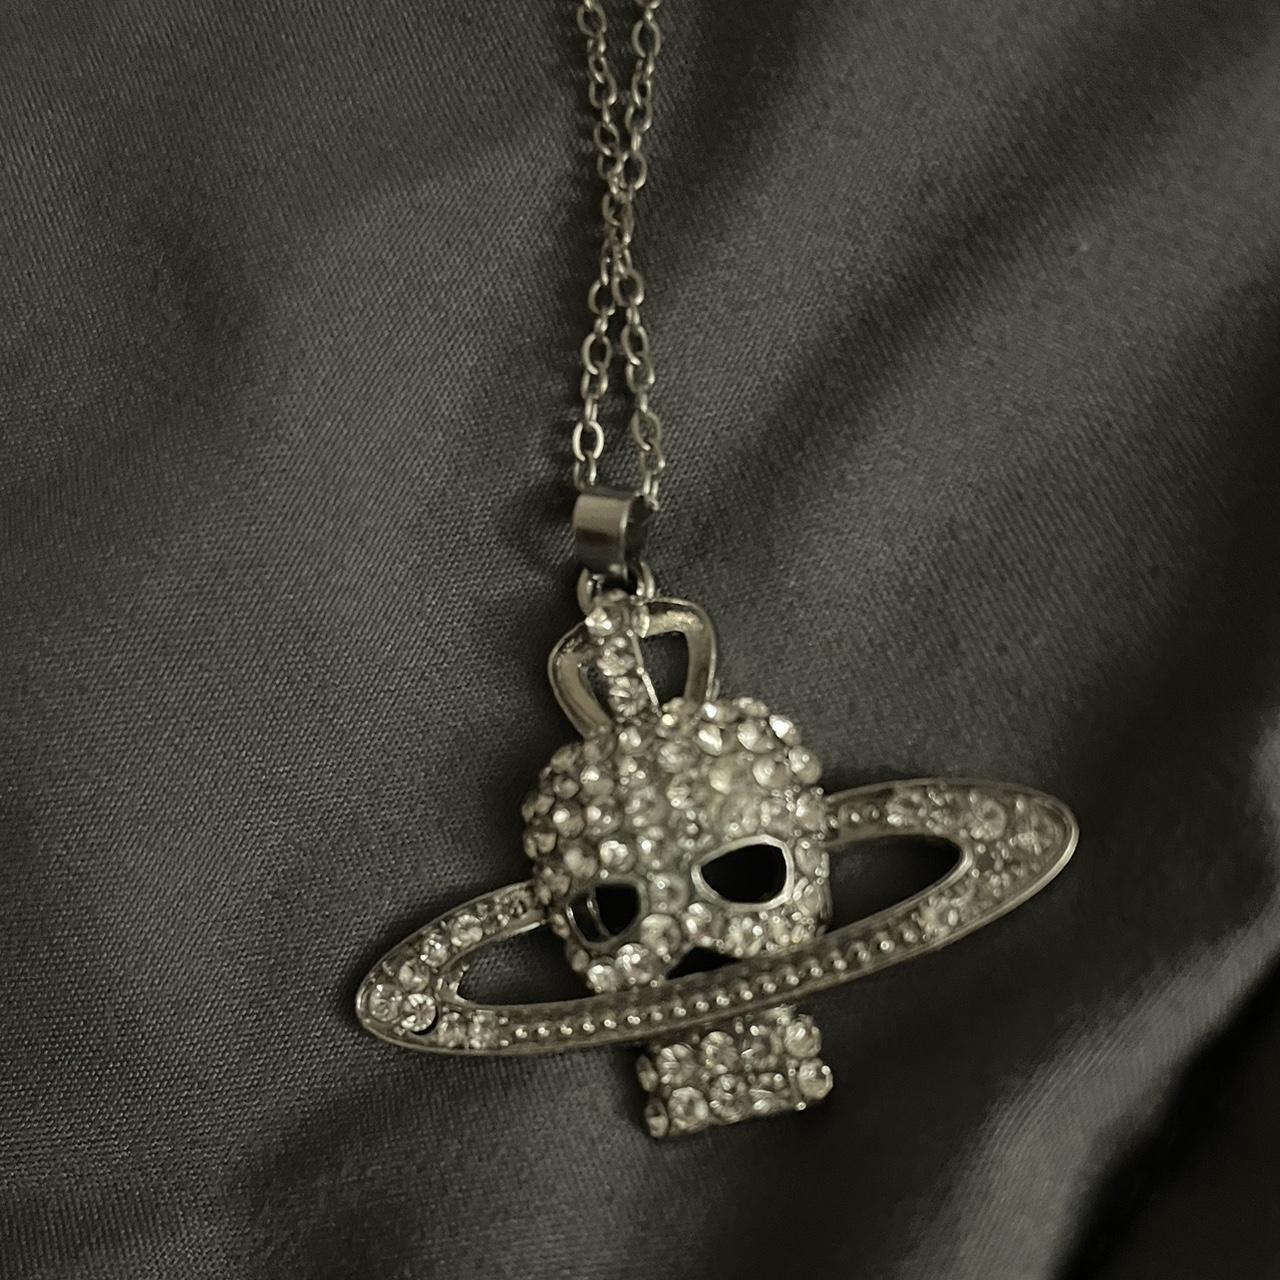 Vivienne Westwood Skull Design Necklace - Depop